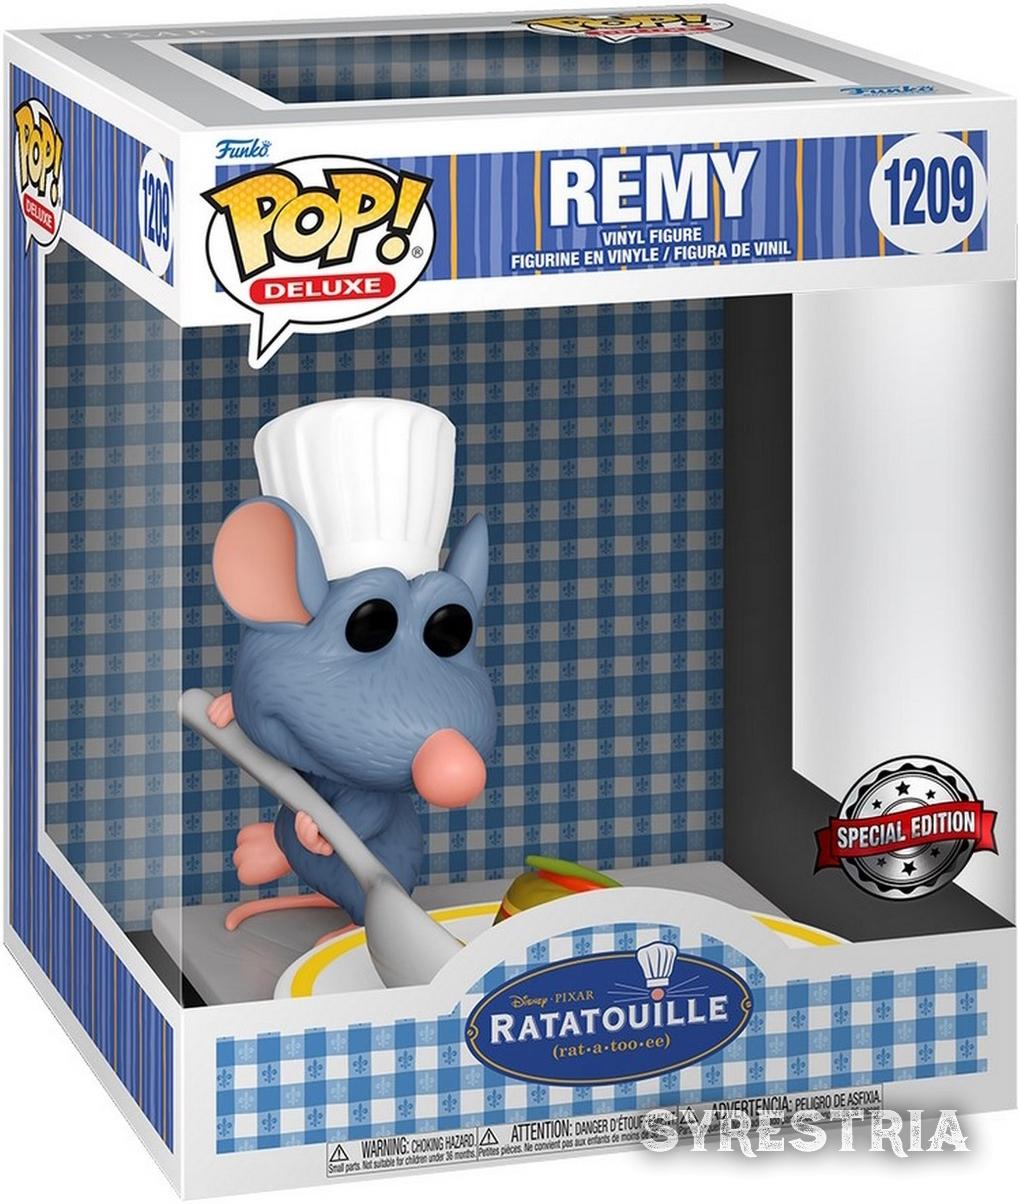 Ratatouille - Remy 1209 Special Edition - Funko Pop! Deluxe